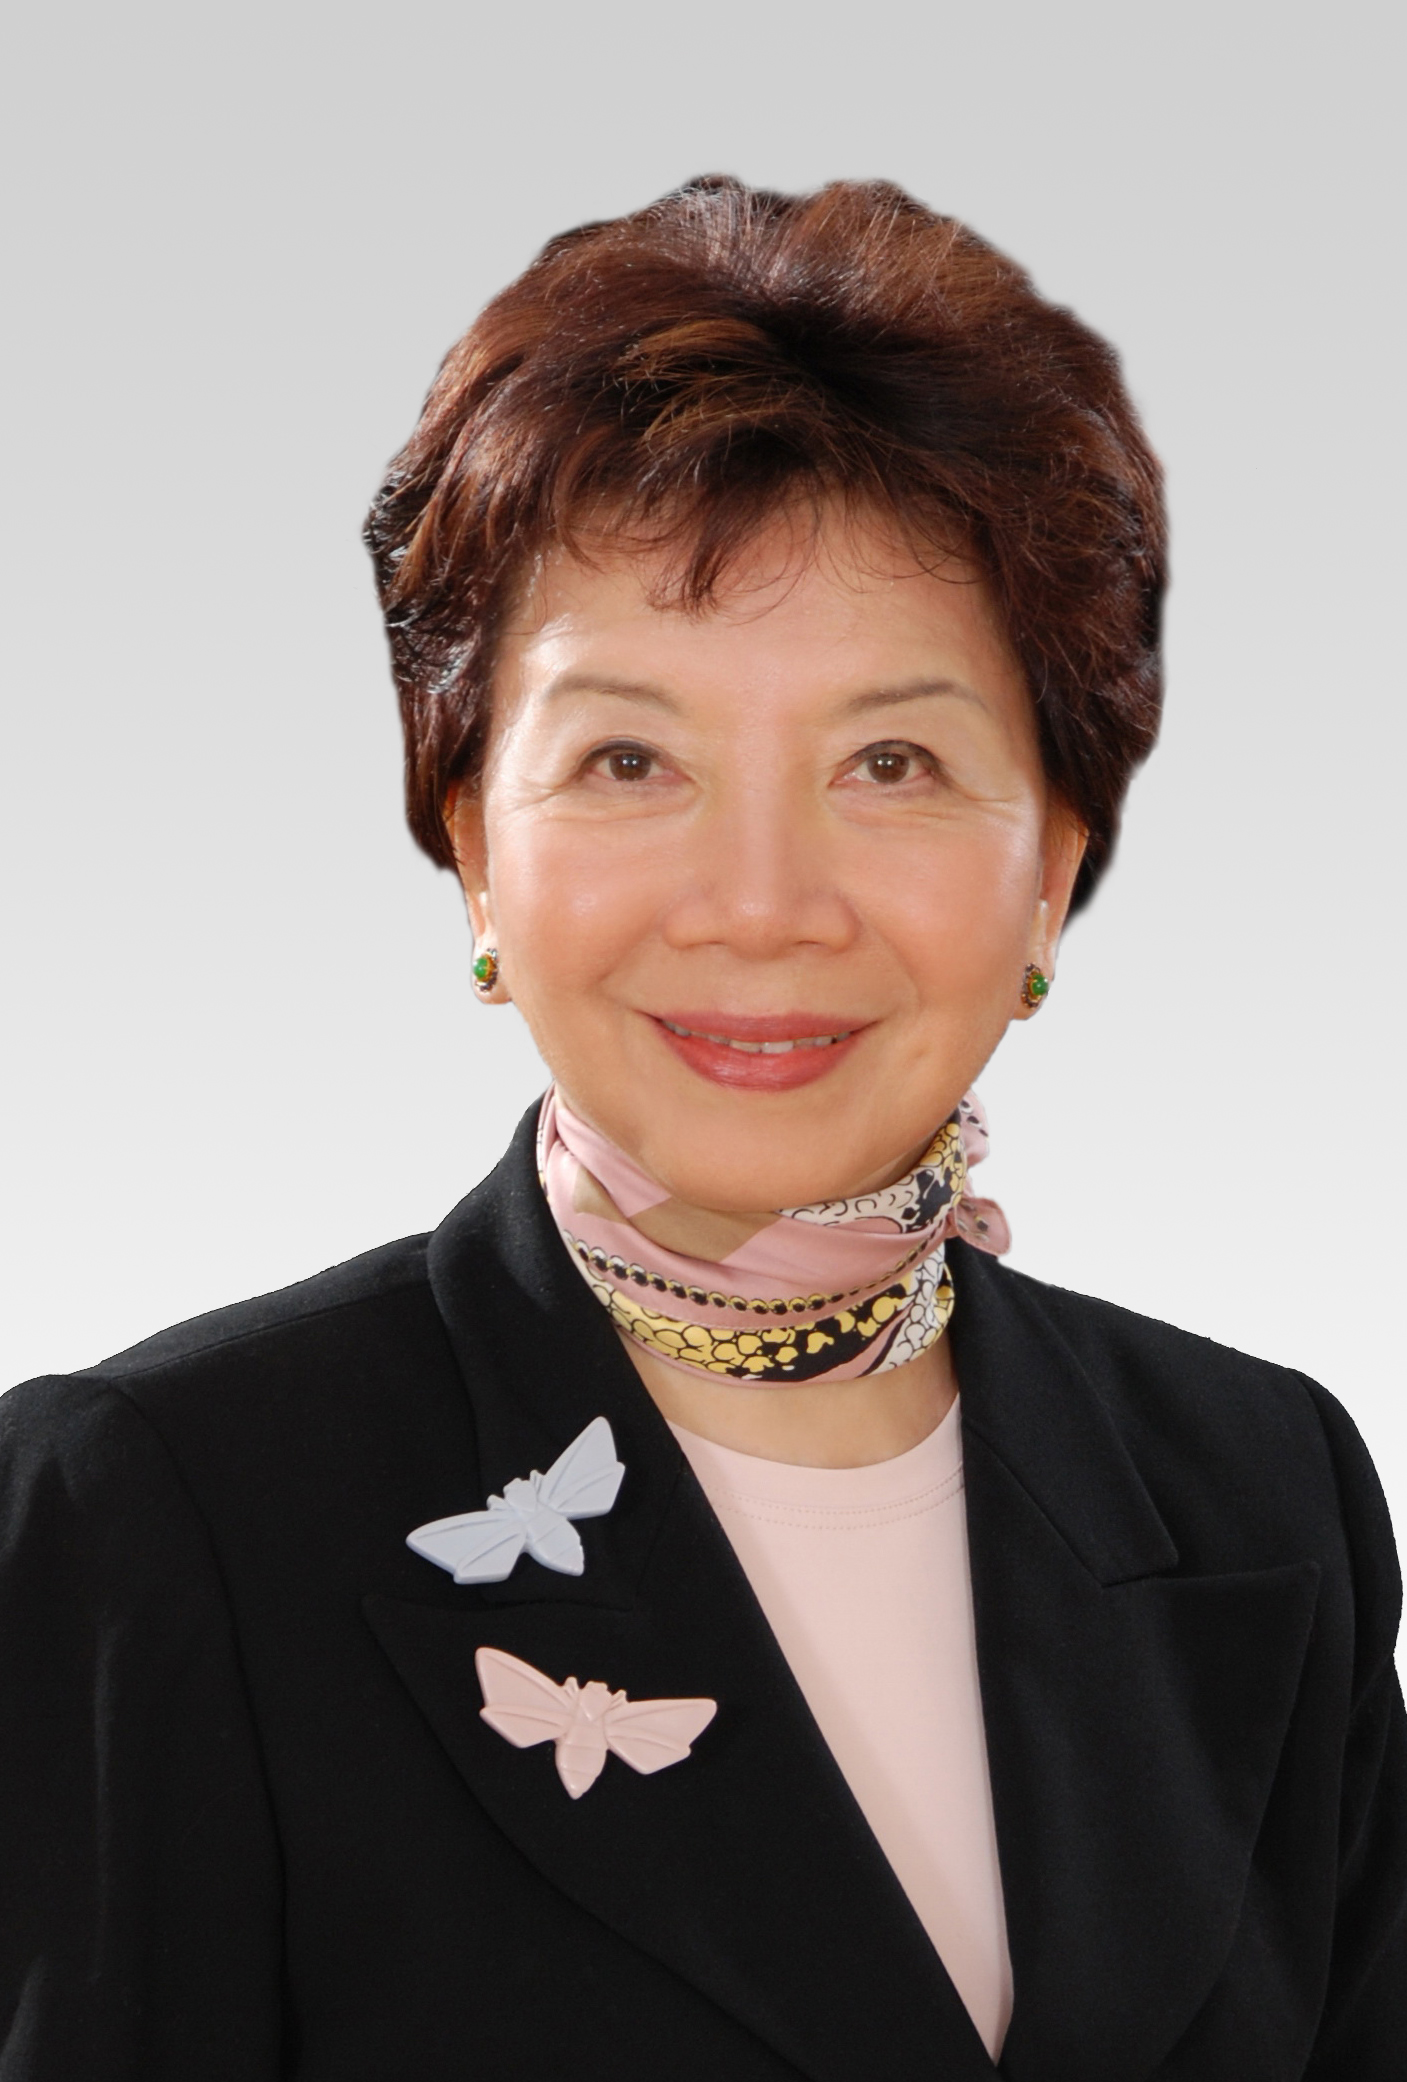 Mrs Anna Pao Sohmen